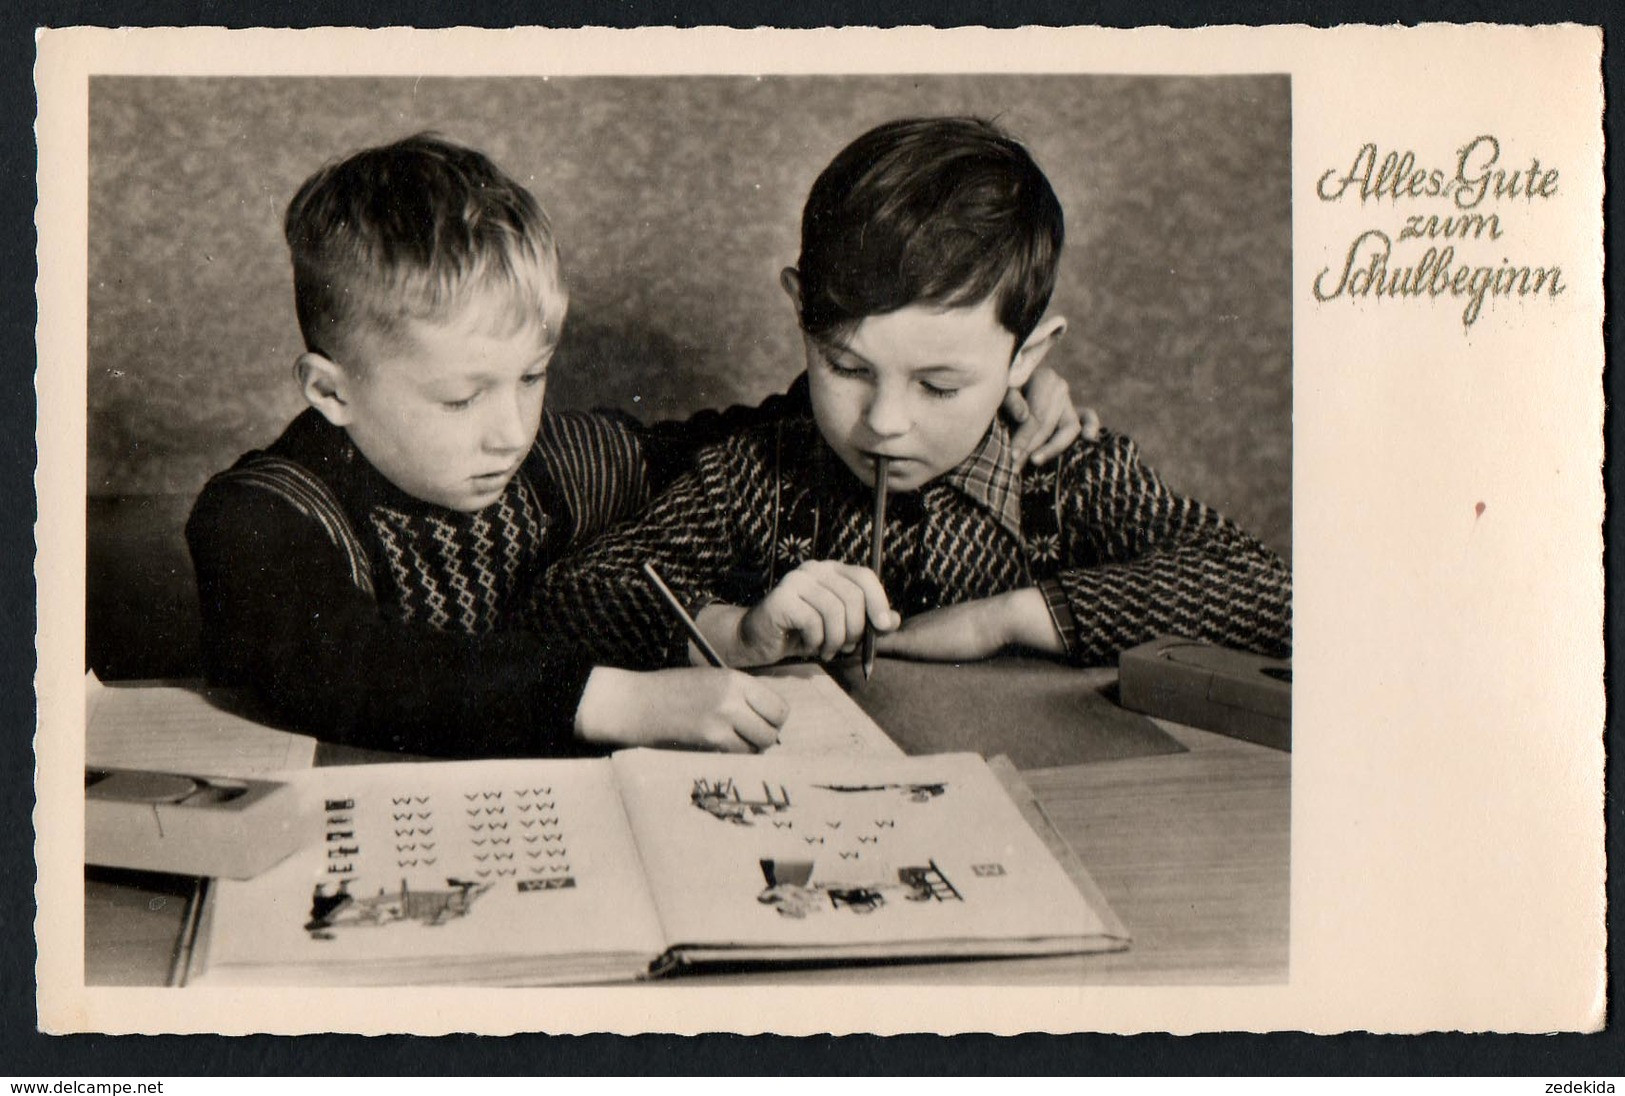 A4812 - Glückwunschkarte Schulanfang -  Schule Lernen Mode Frisur - Klassenzimmer - Neubert DDR 1956 - Children's School Start